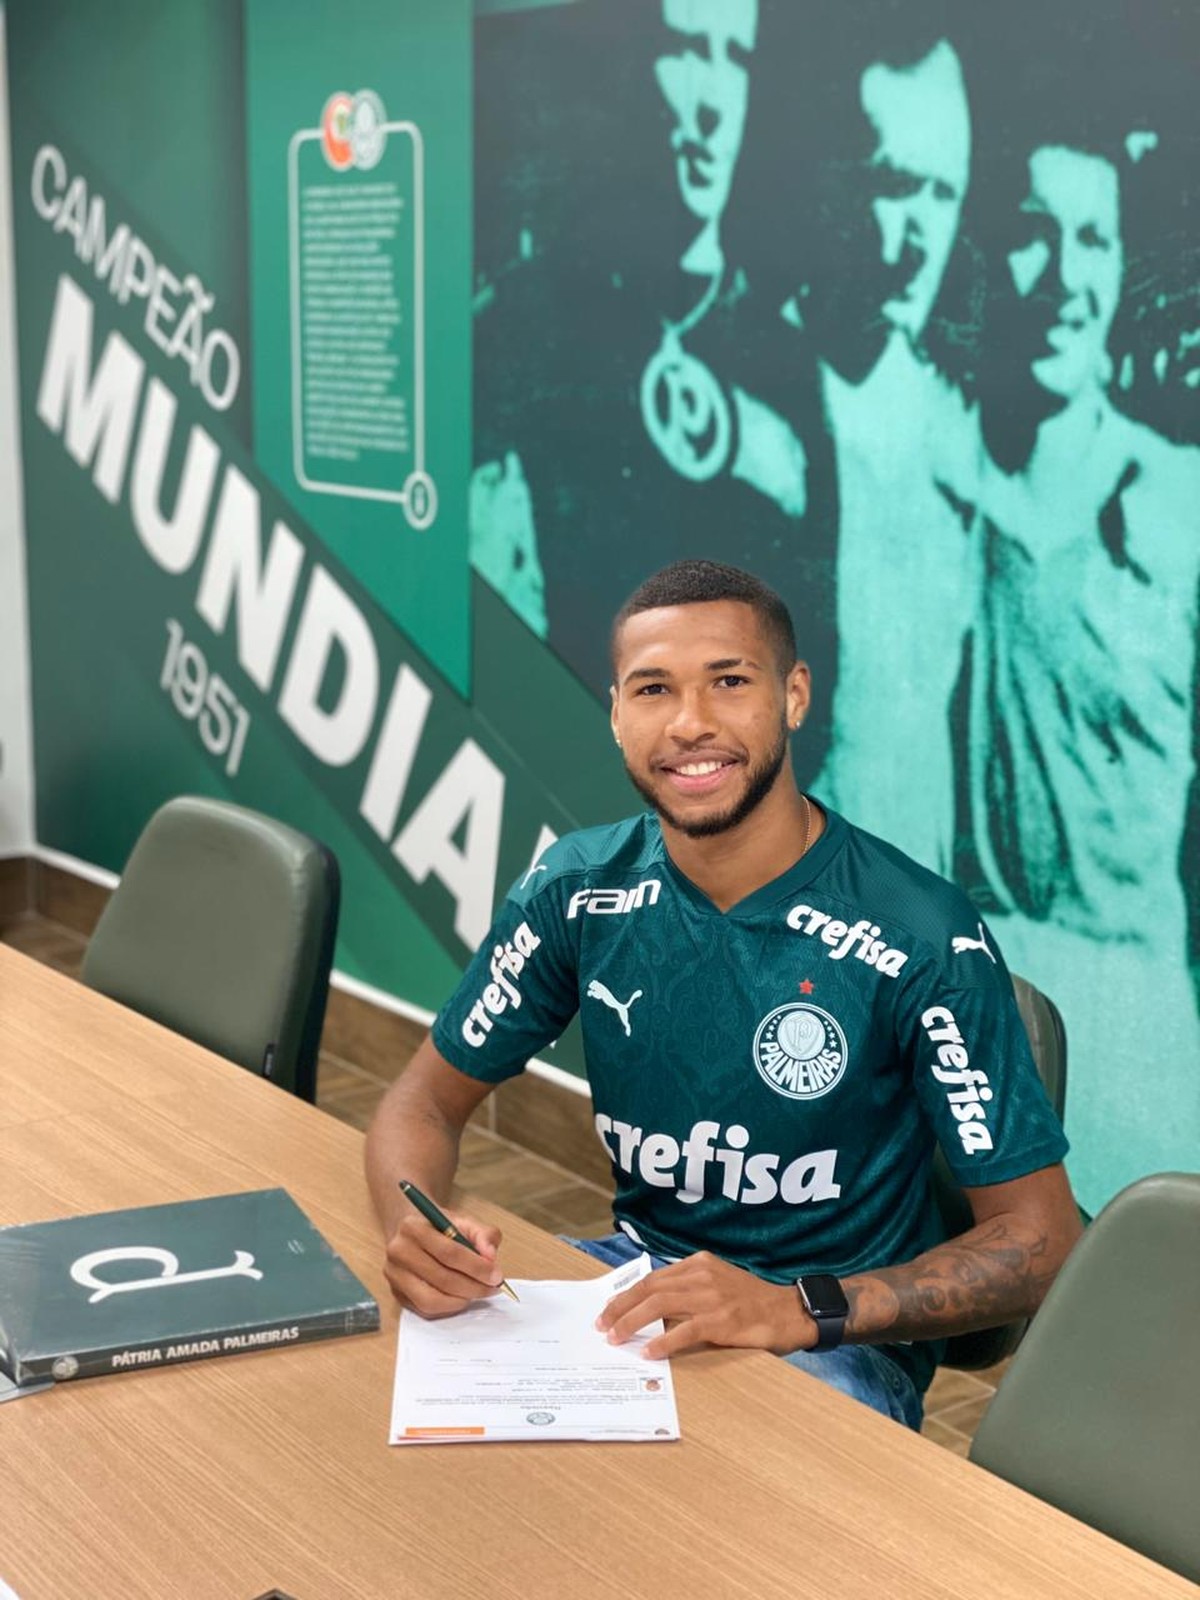 Bahia inicia negociações para contratar Wesley, do Palmeiras